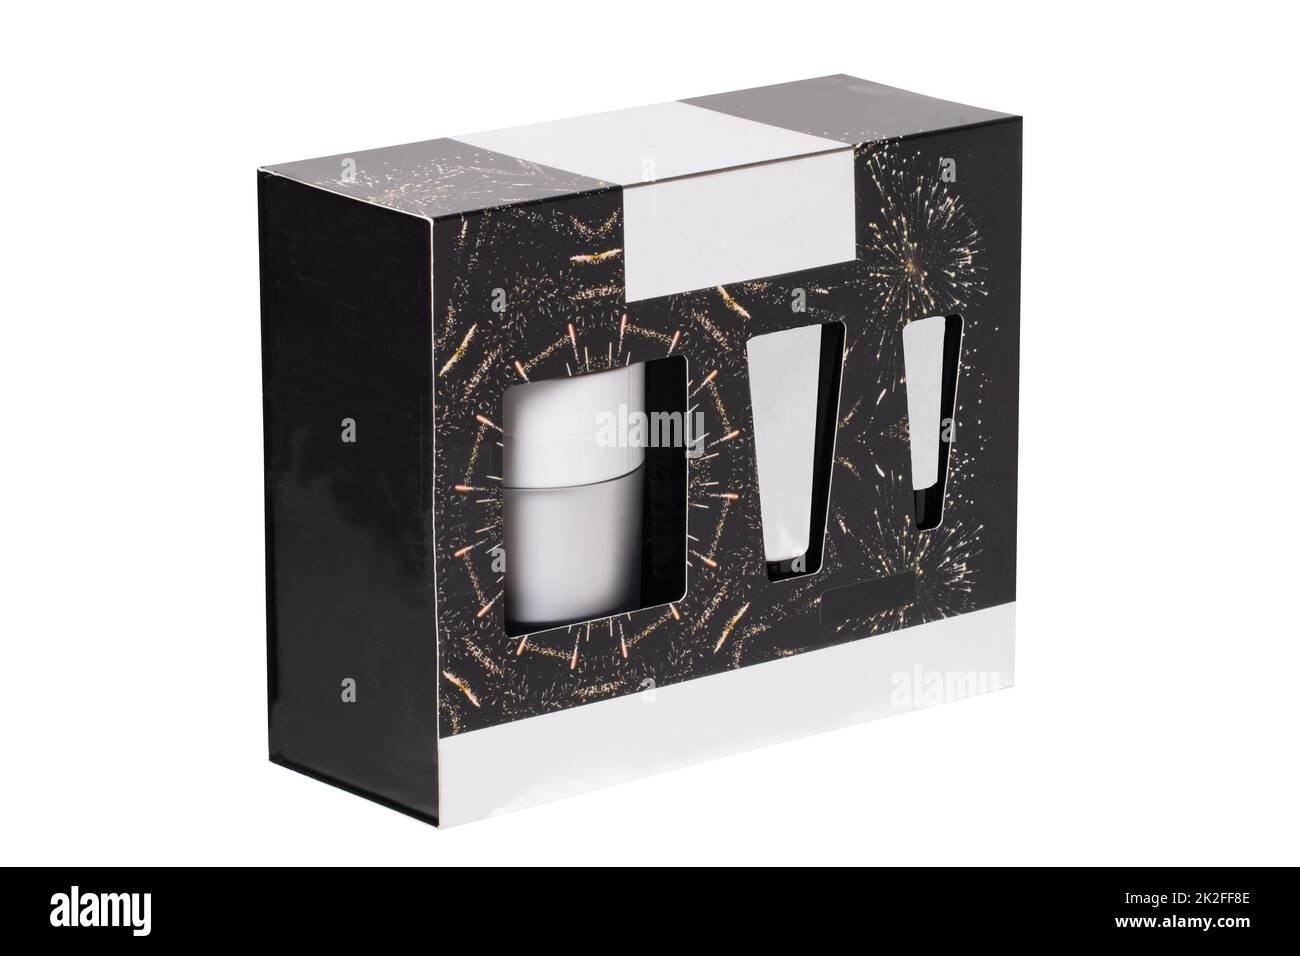 Primo piano di una scatola decorativa nera cosmetica o scatola regalo con tubi bianchi e contenitori senza etichette isolati su sfondo bianco. Macro. Foto Stock